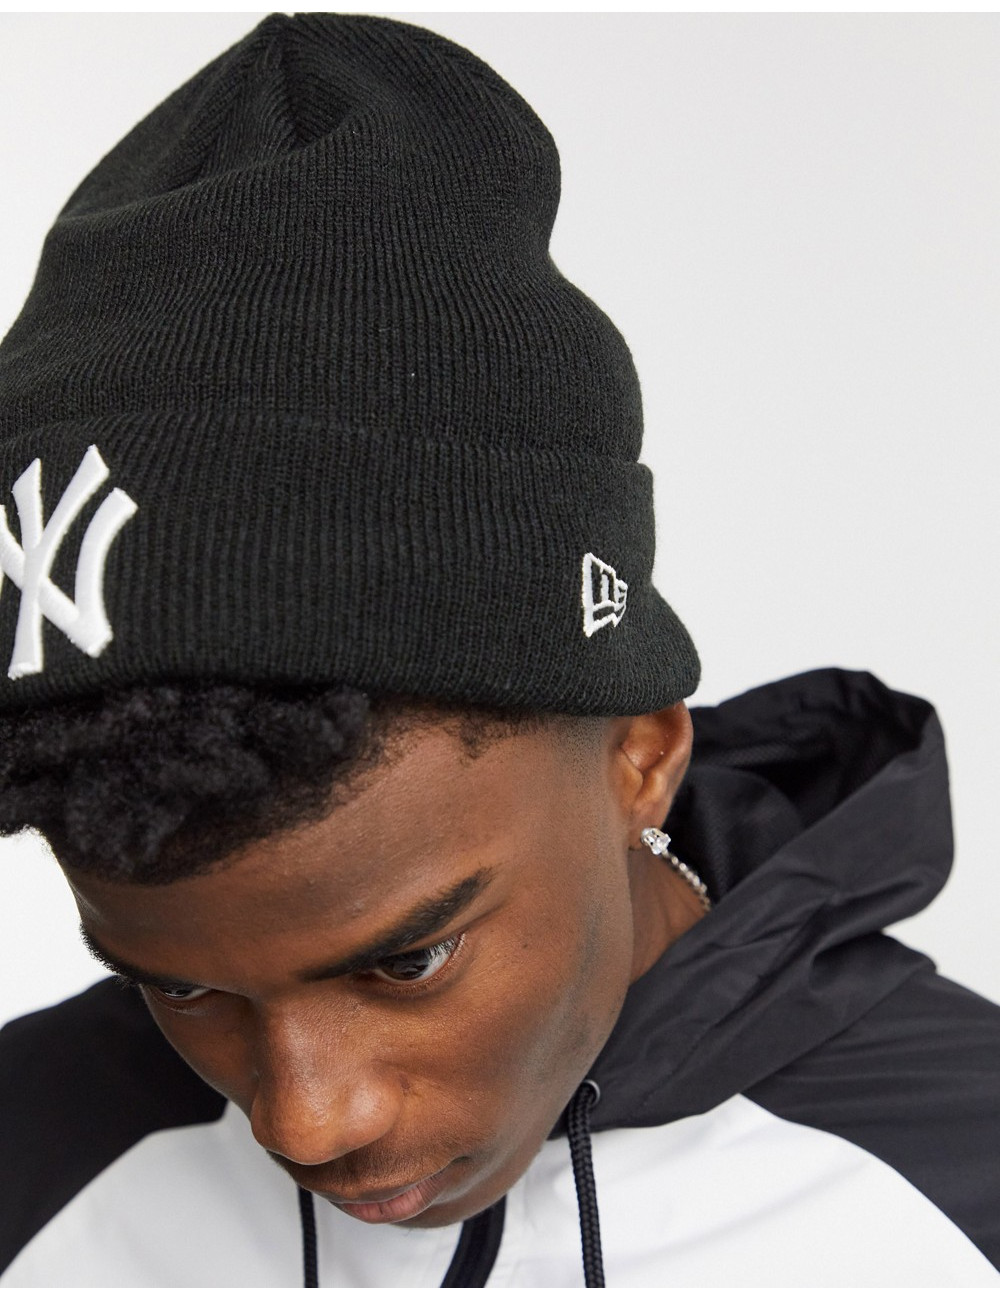 New Era NY beanie hat in black